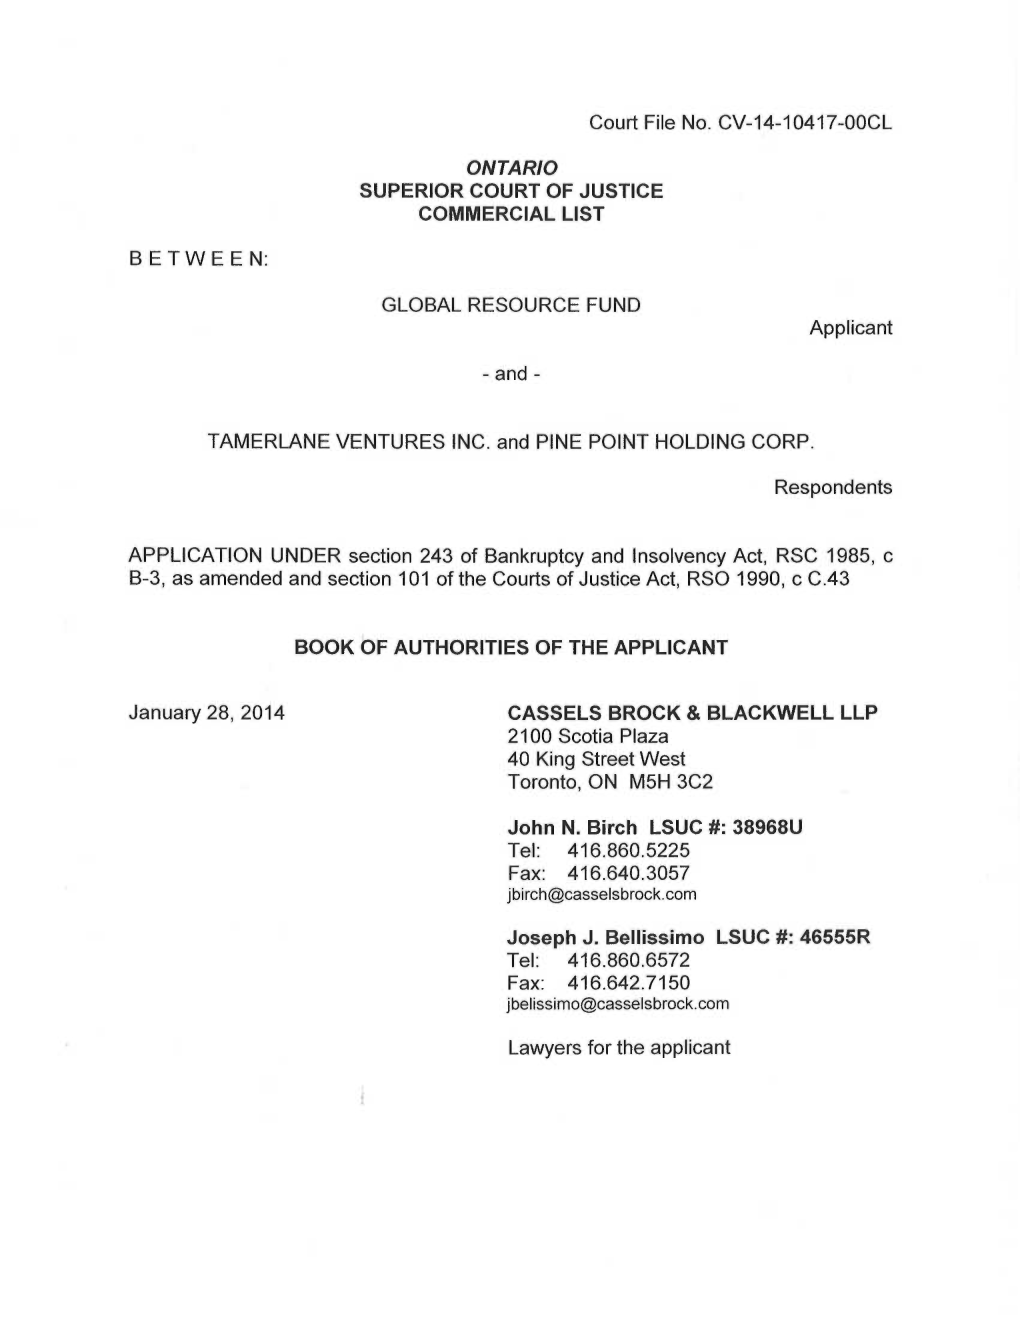 Court File No. CV-14-10417-OOCL ONTARIO